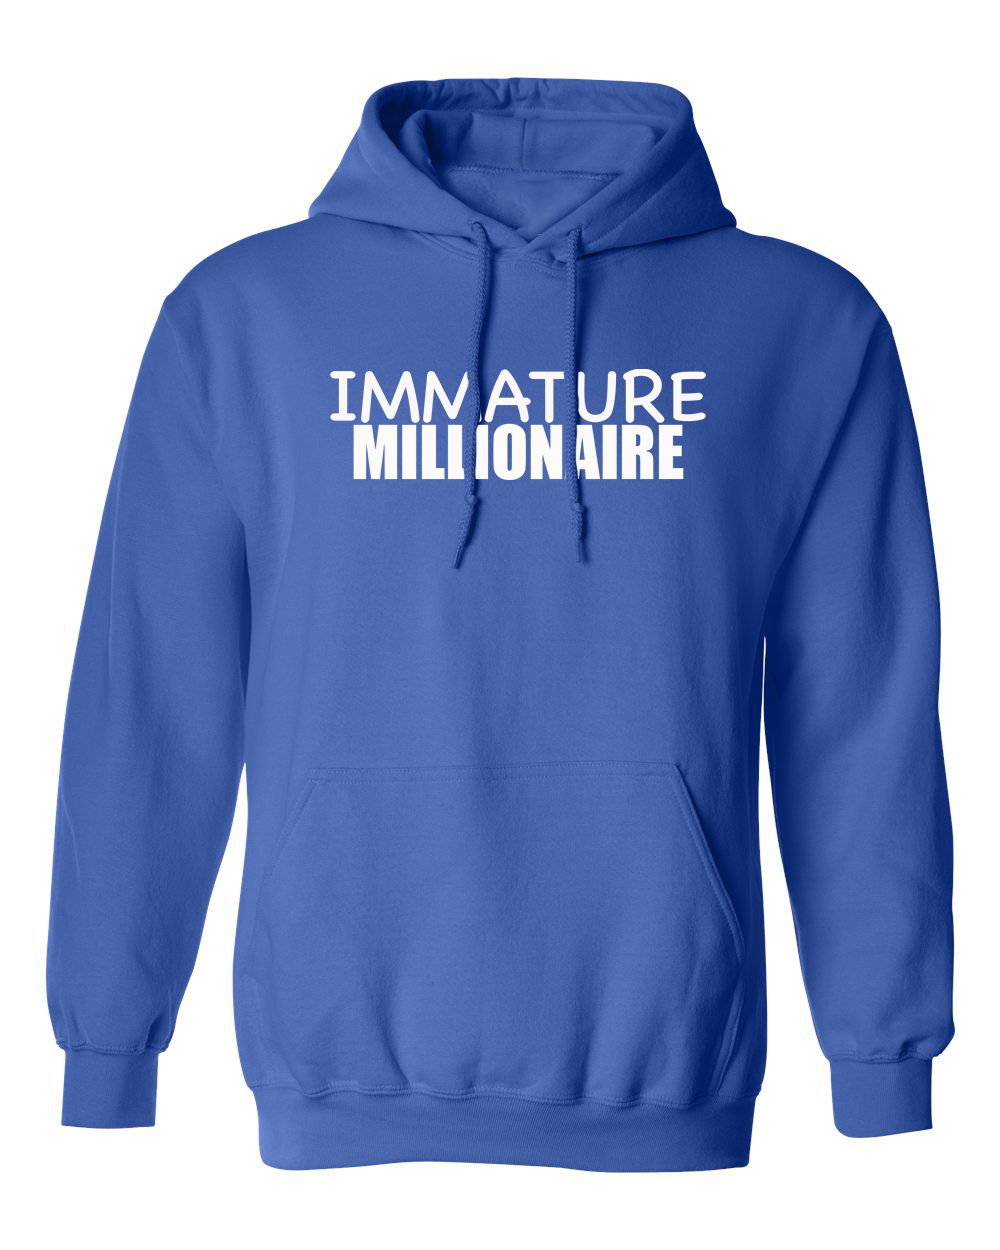 Immature Millionaire Royal Blue Hoodie